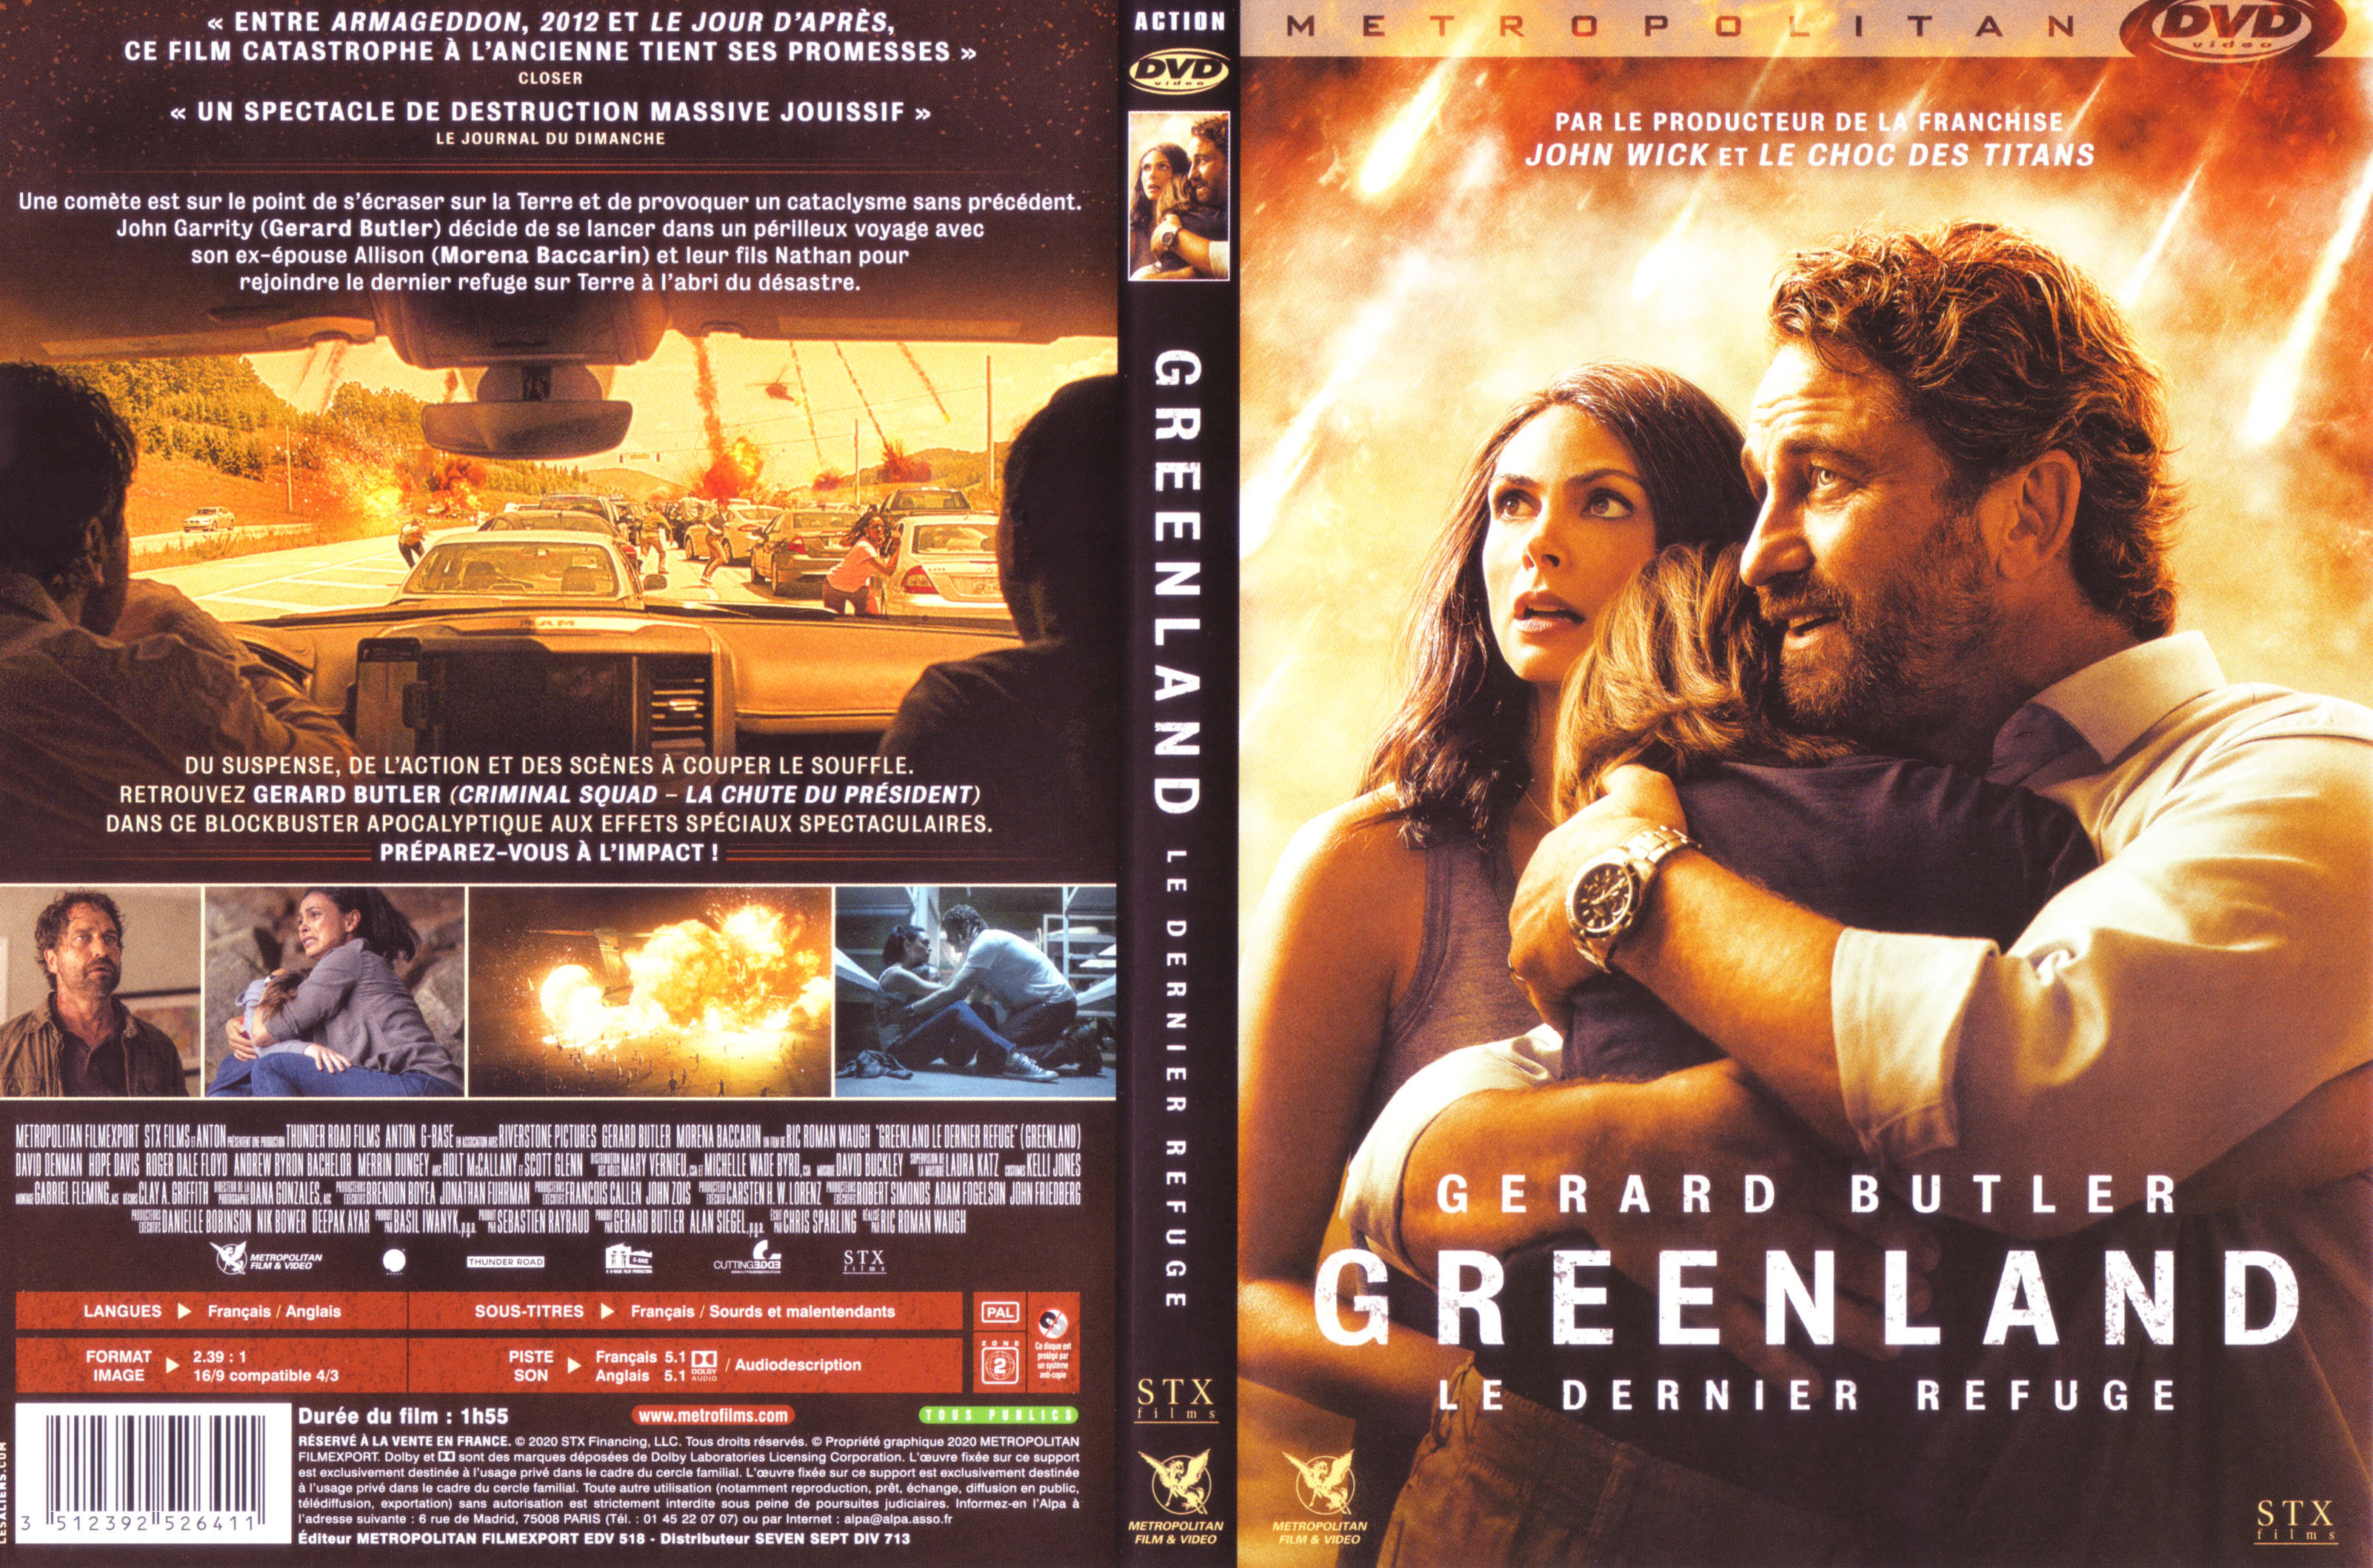 Jaquette DVD Greenland le dernier refuge